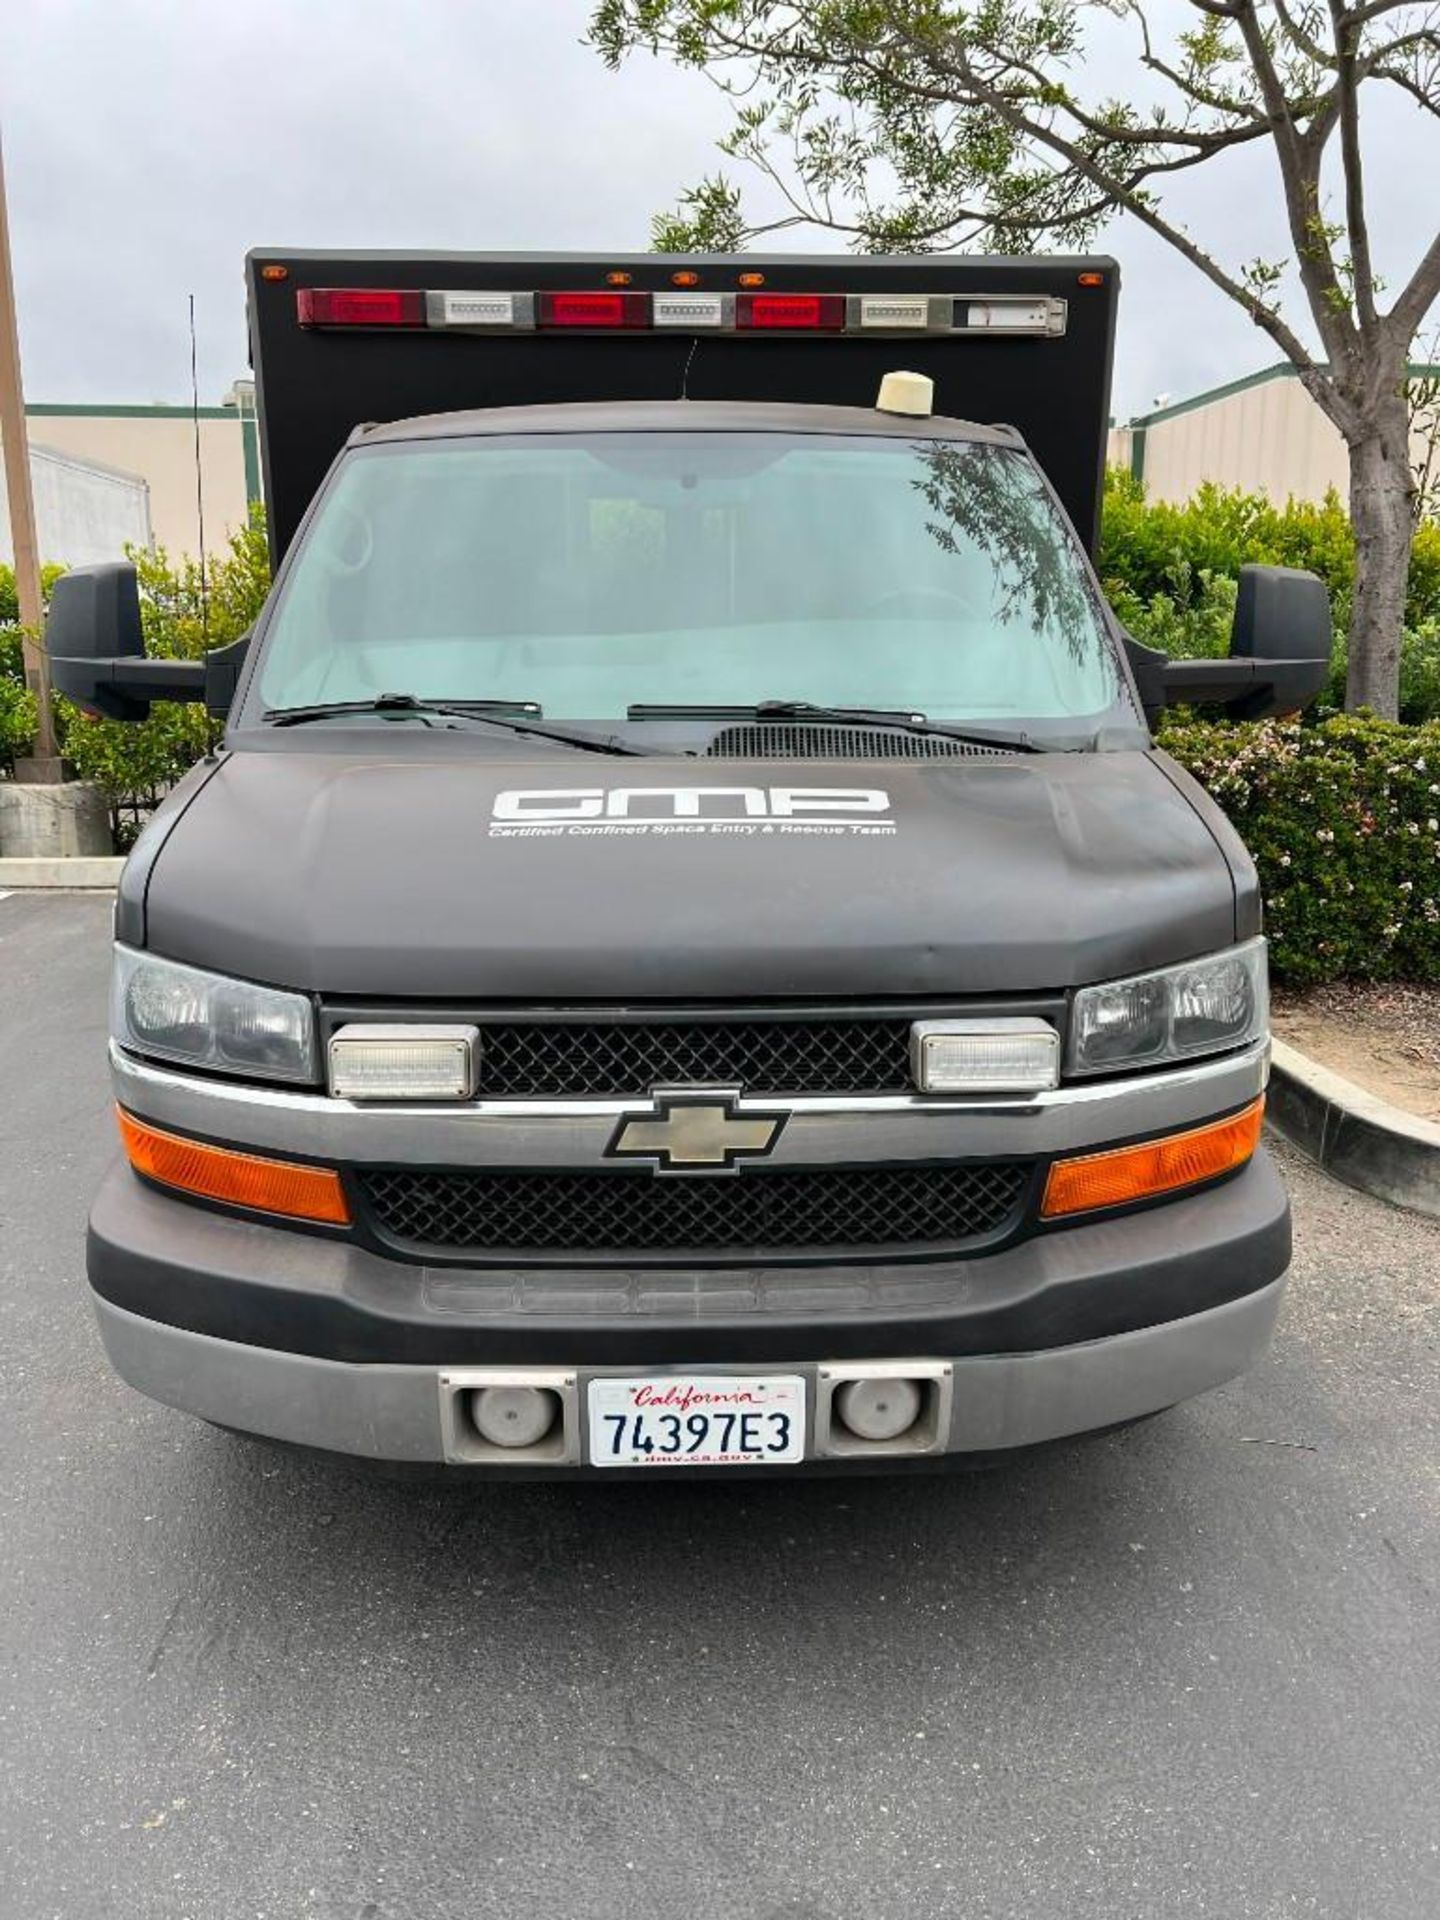 2013 GM G33503 Ambulance - Image 2 of 12